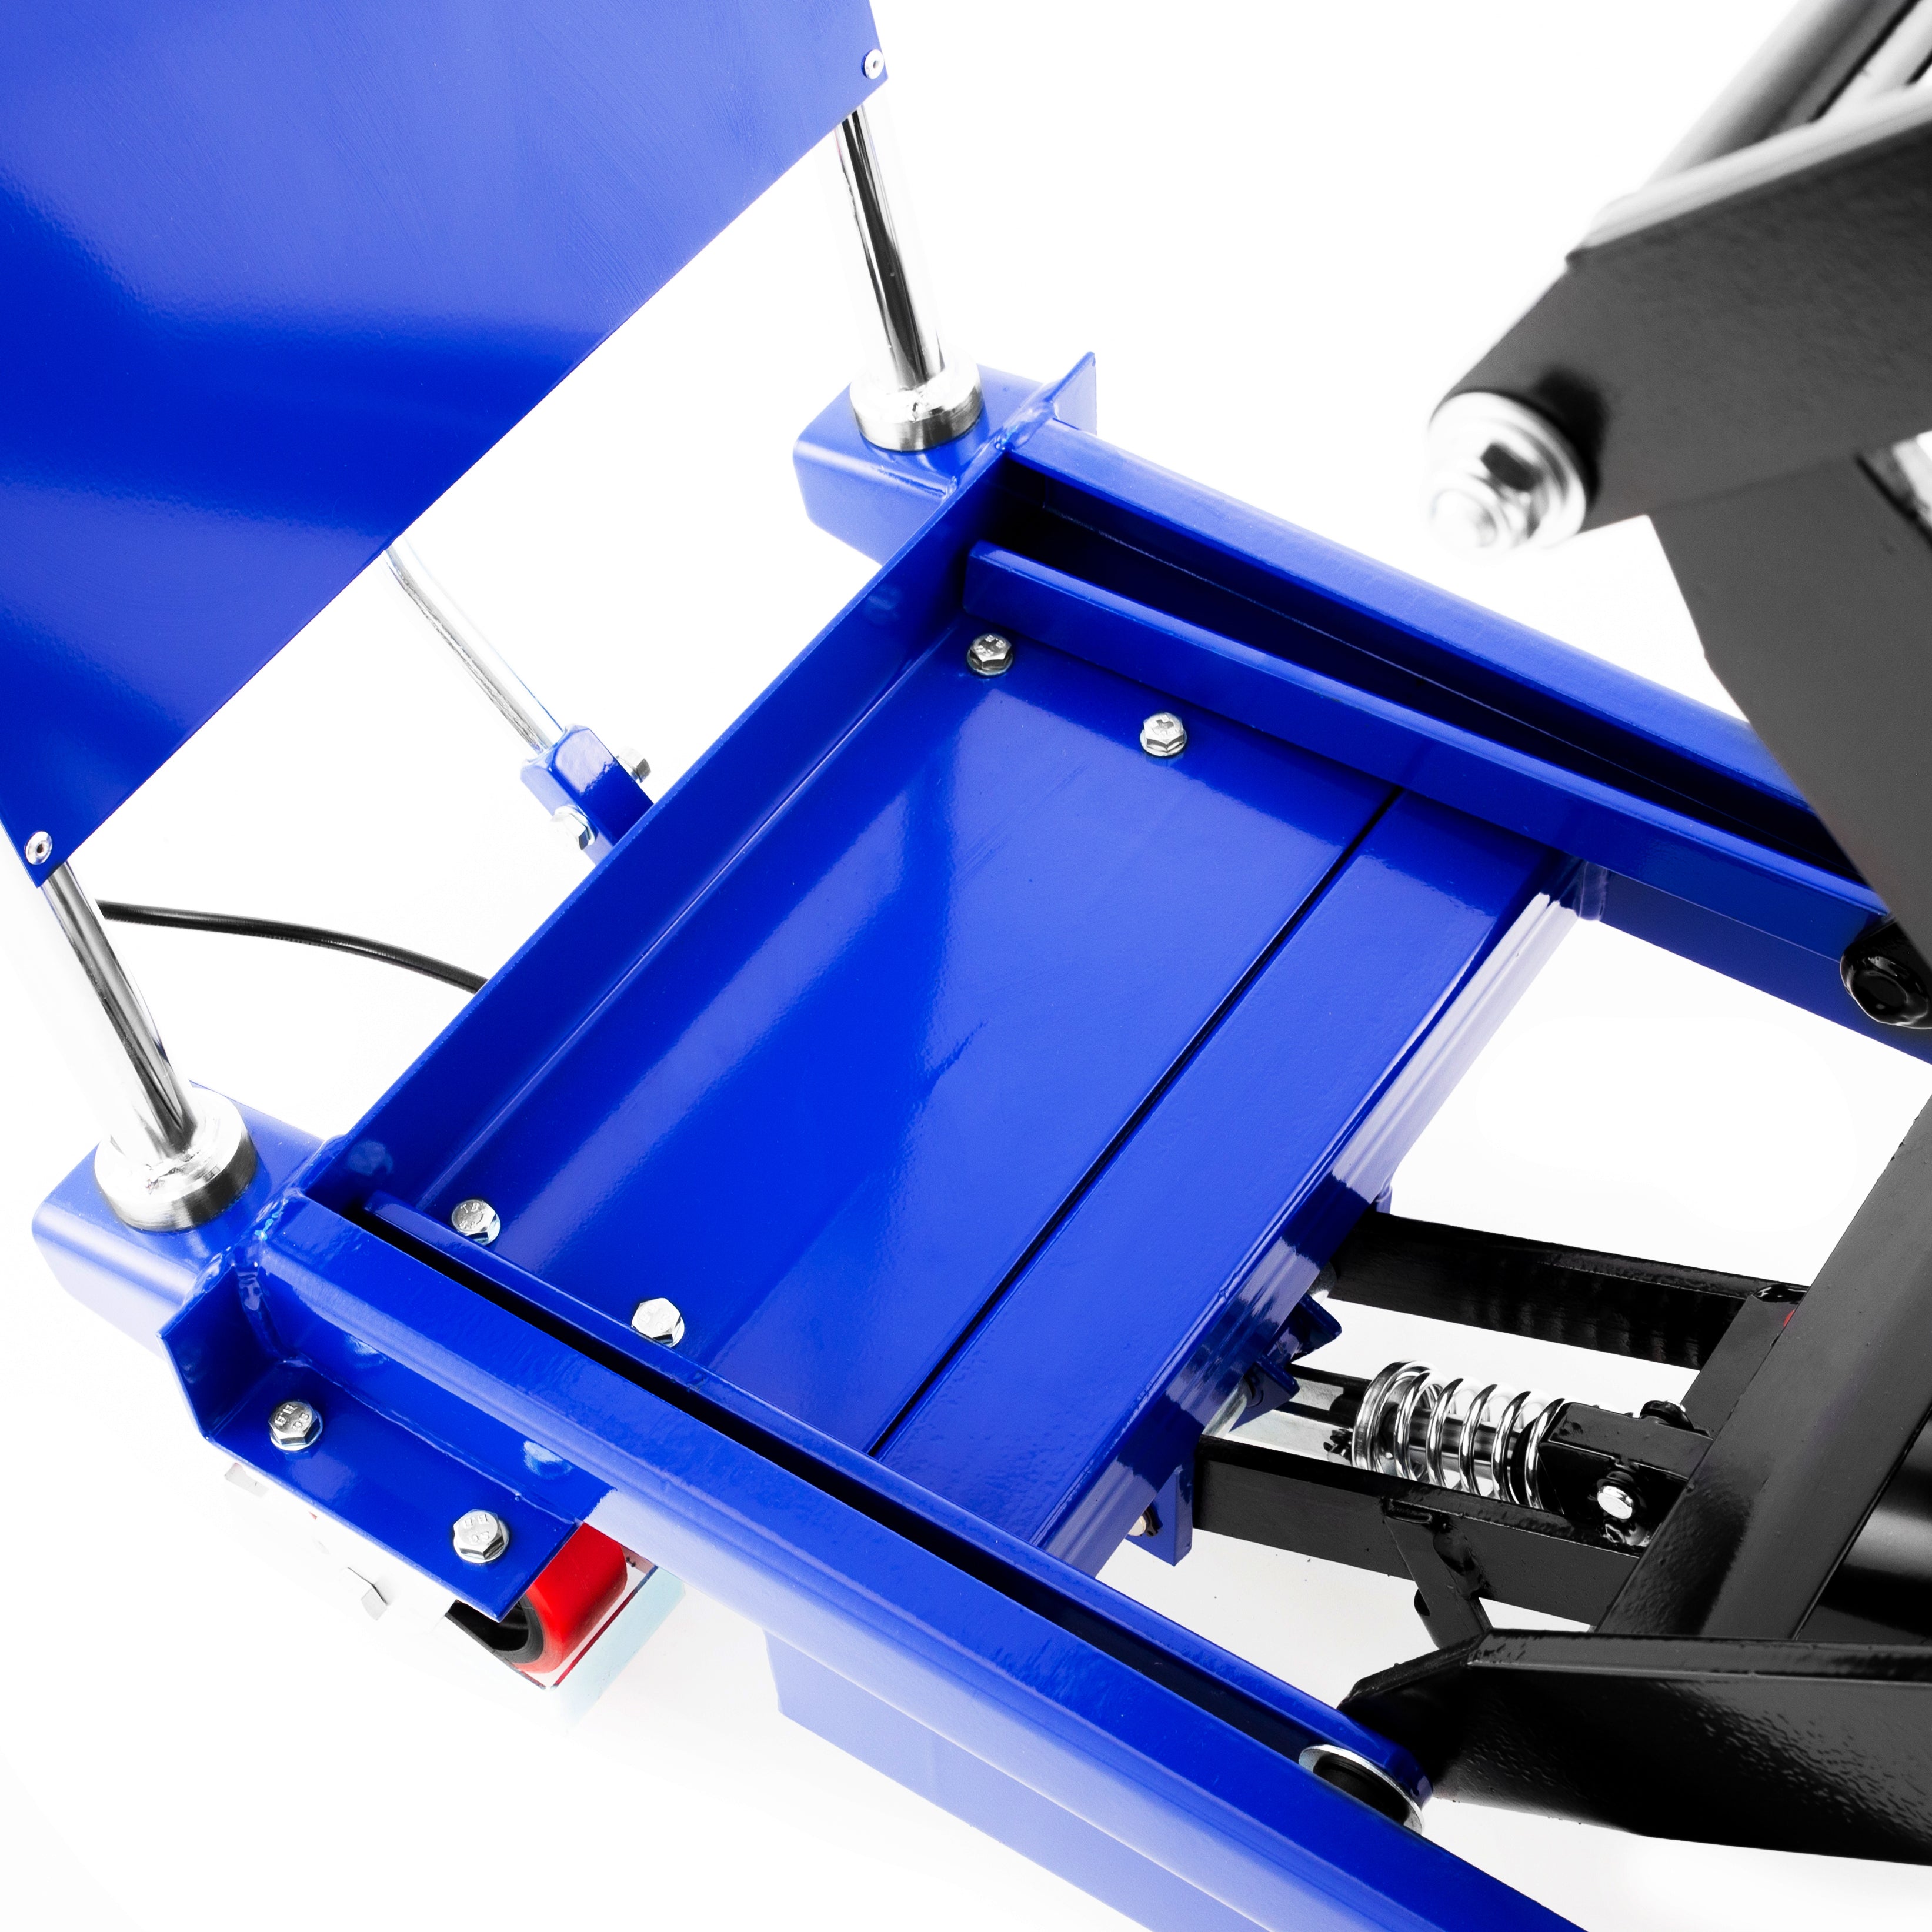 Double Scissor Lift Table Cart image 21